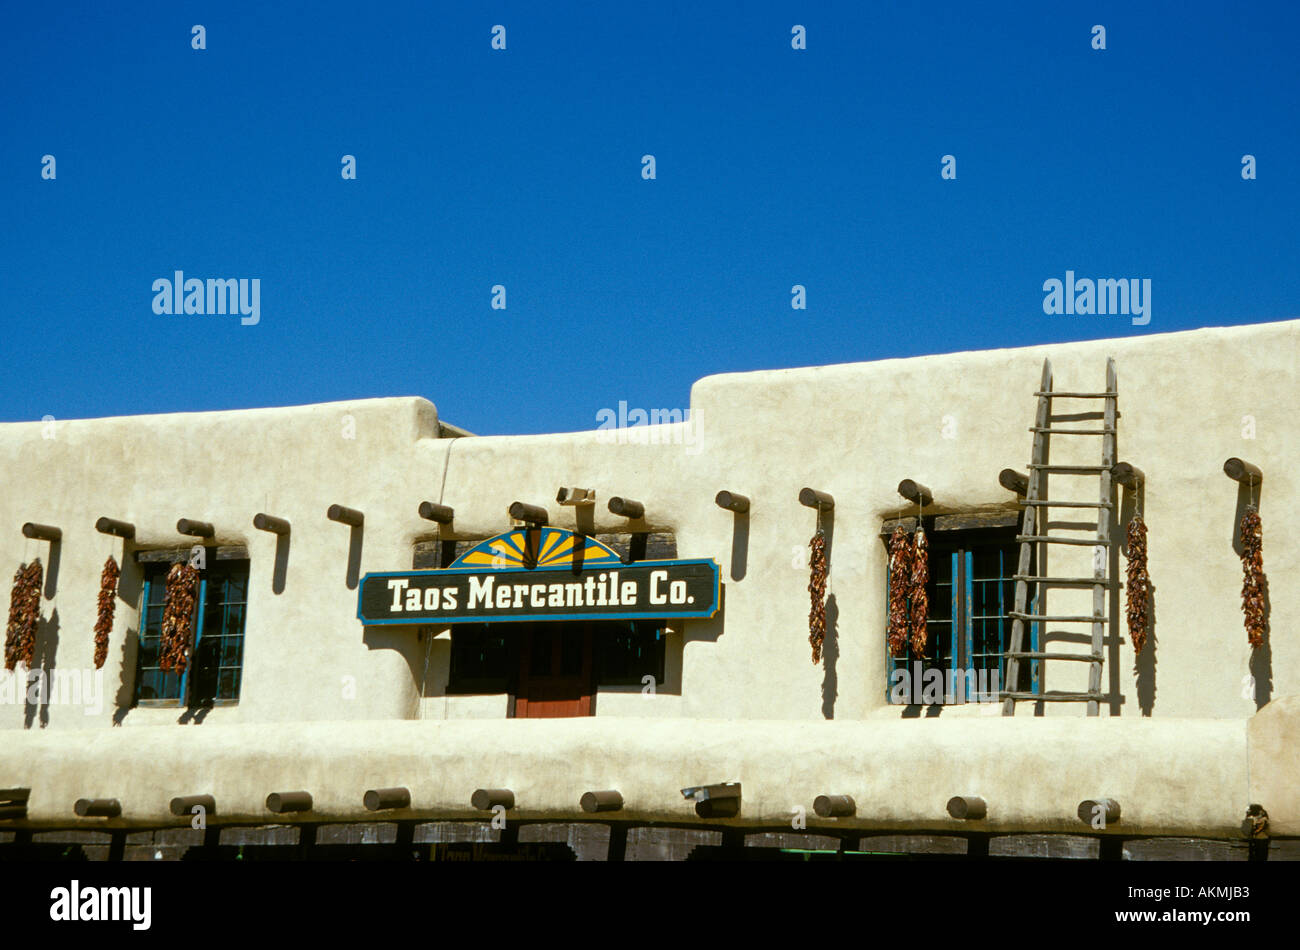 Ben noto famosa UAT Mercantile Co edificio sulla piazza principale Town Plaza del centro cittadino di Taos New Mexico USA Foto Stock